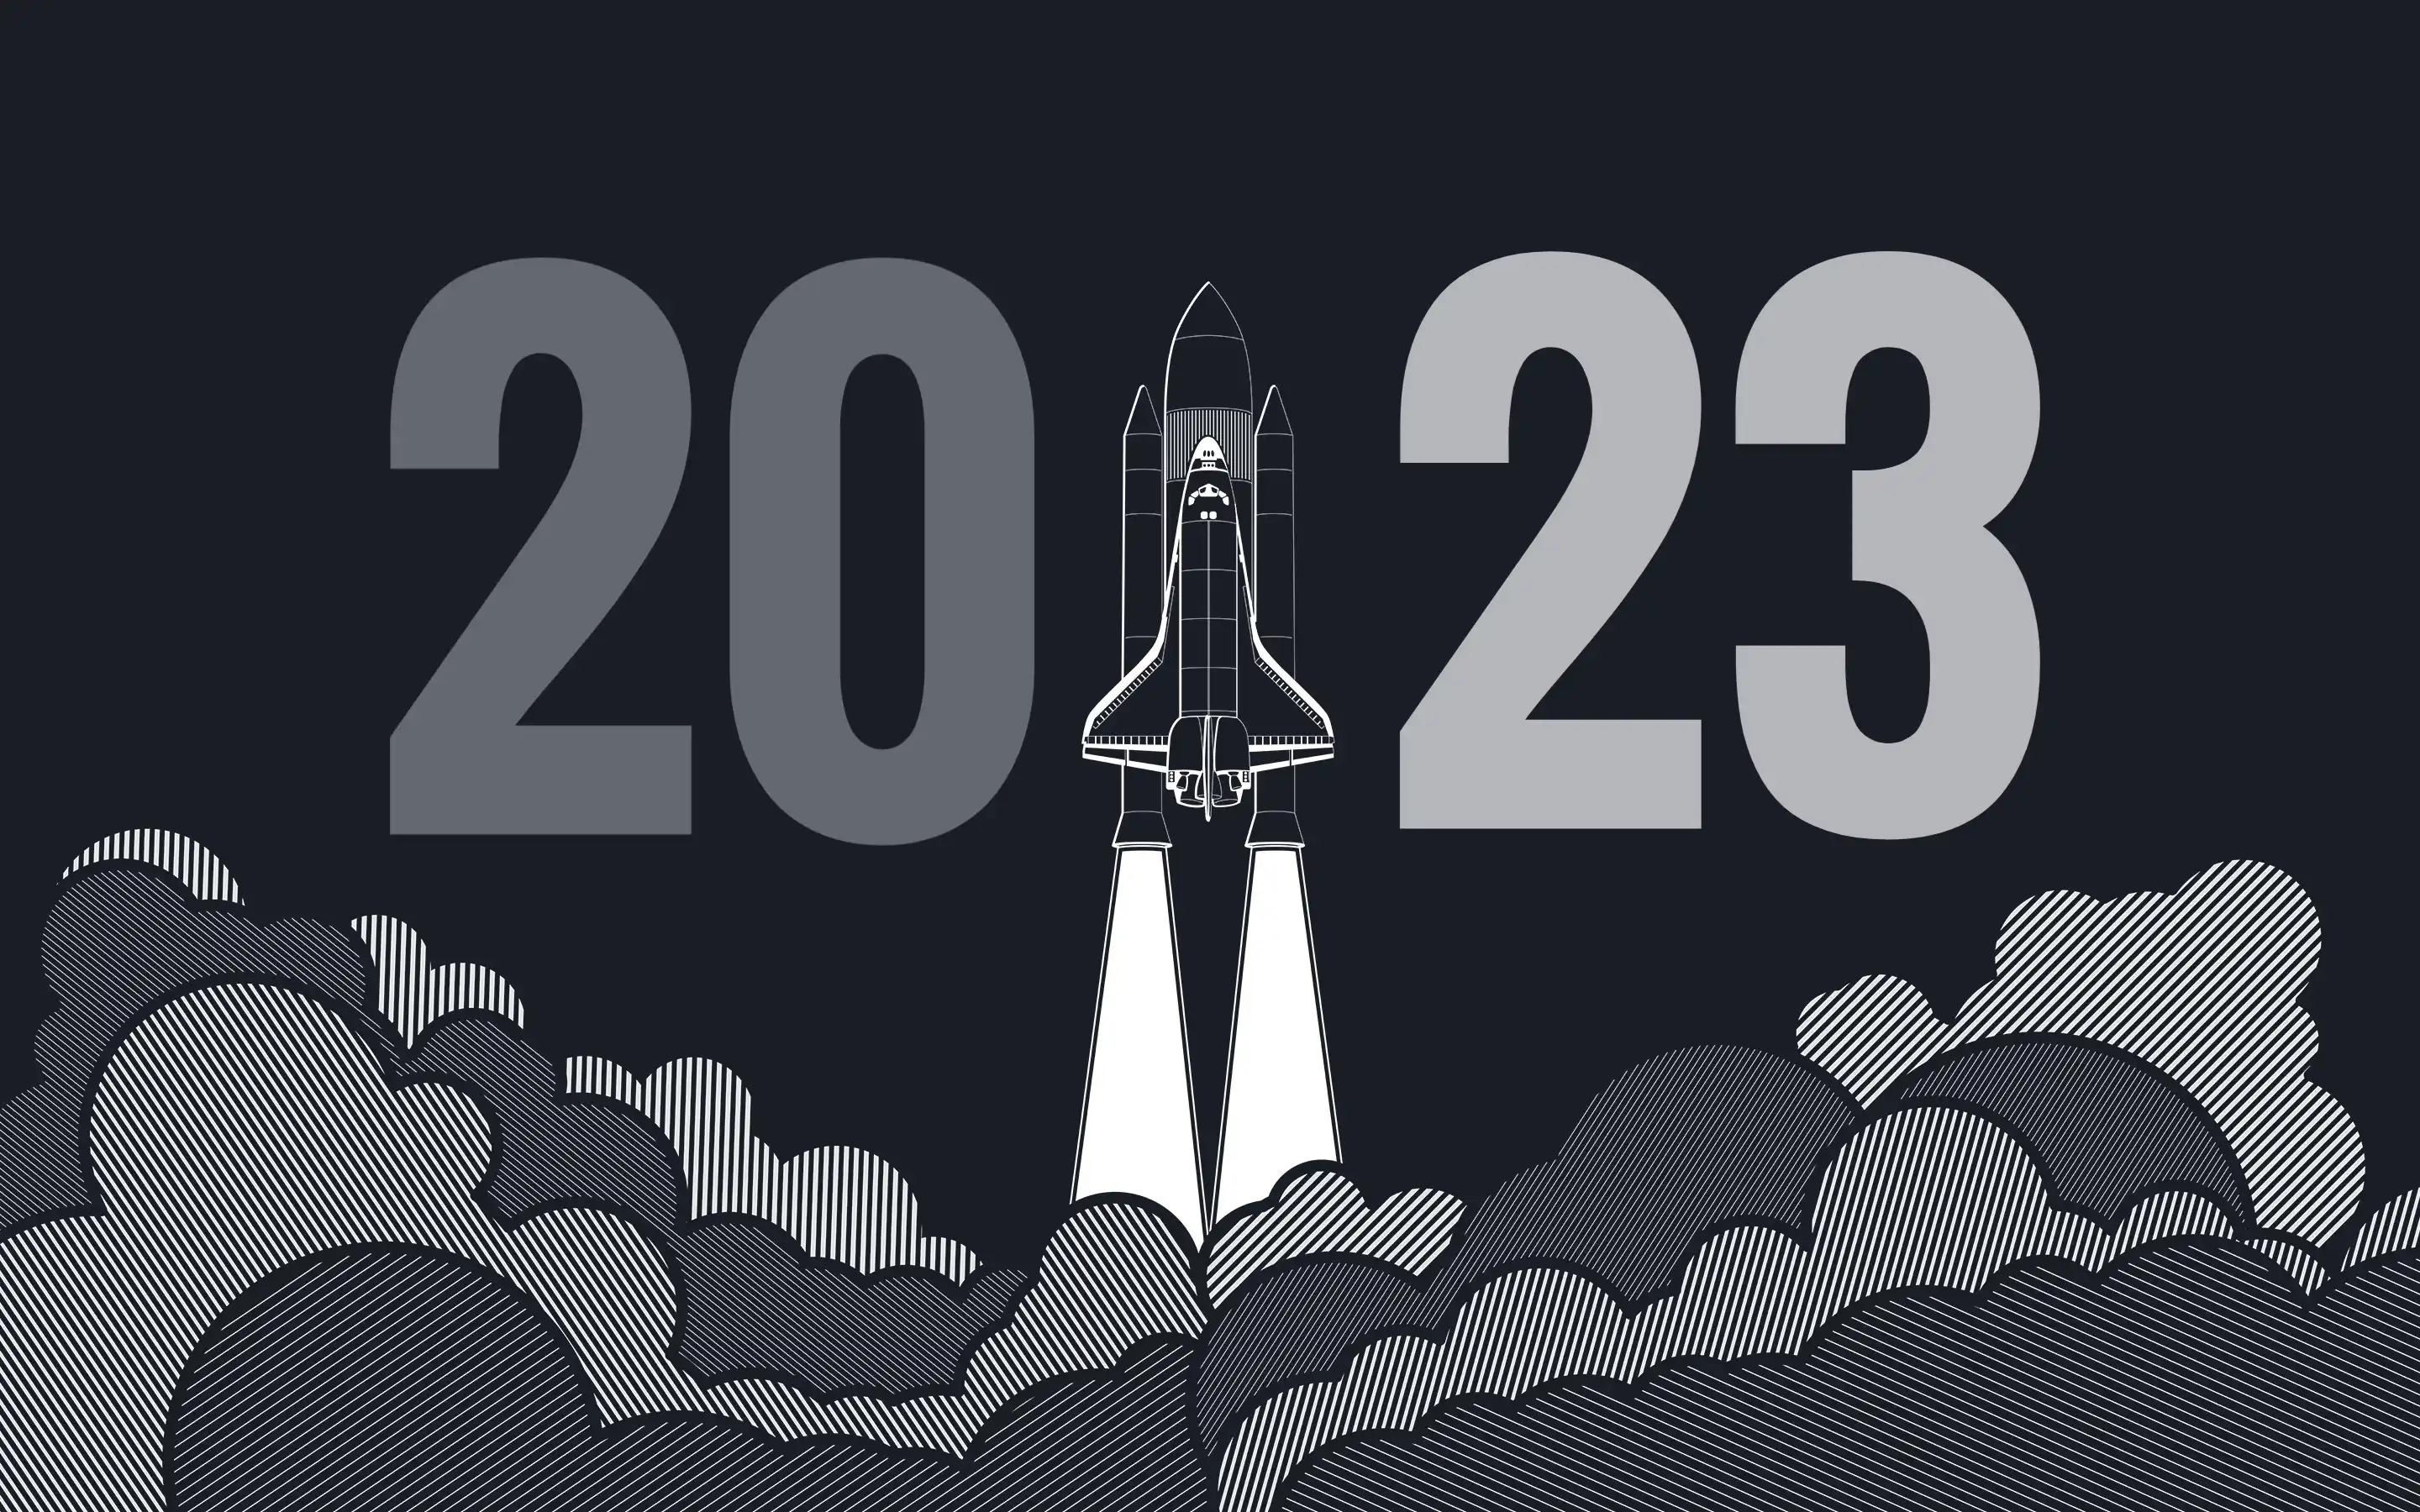 精选 2022 的回忆，通往 2023 的足迹——2022 年度总结